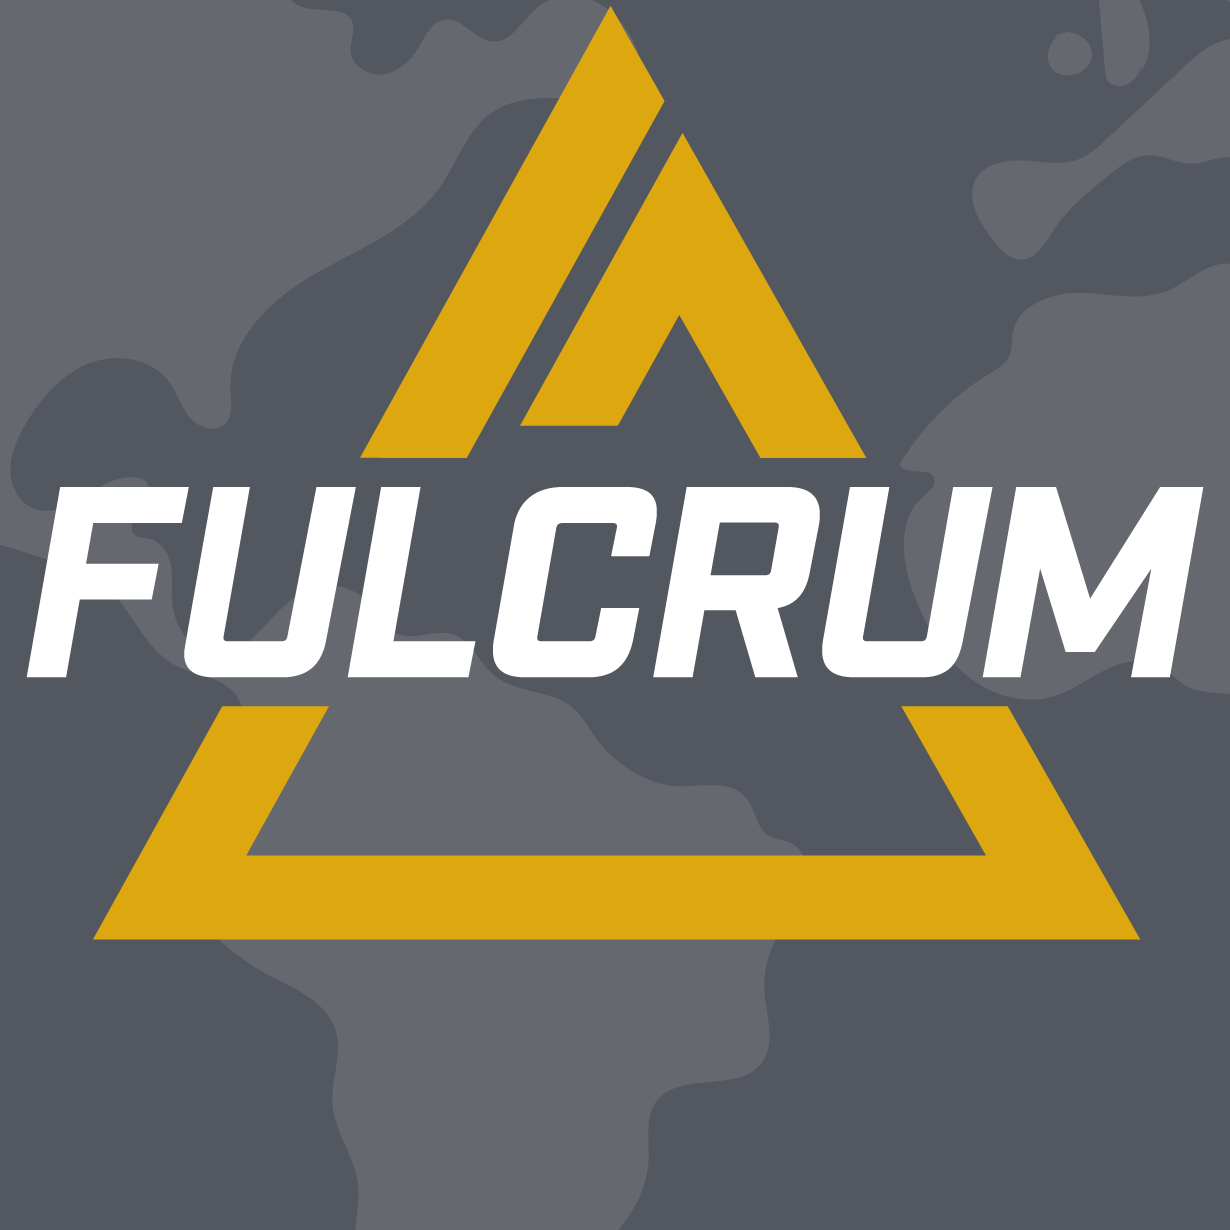 Fulcrum Concepts